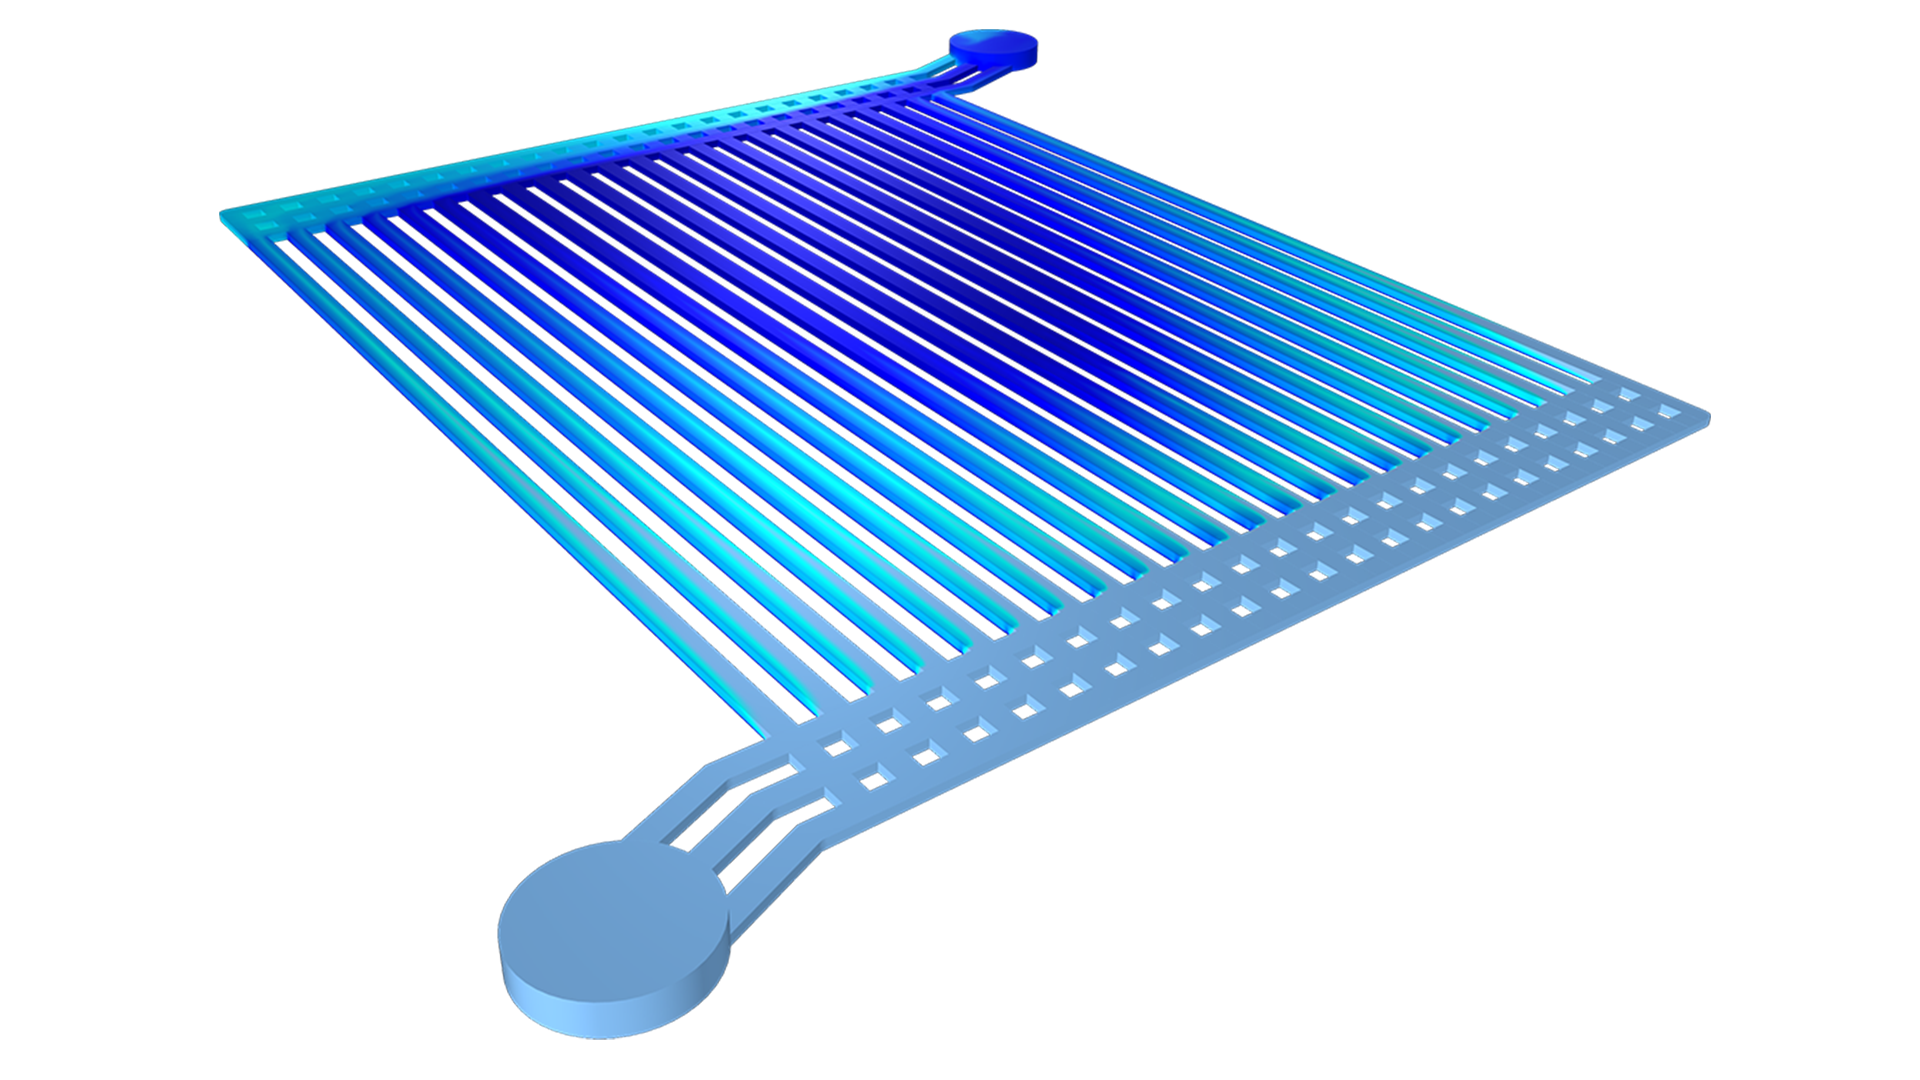 ガスの体積分率が濃い青から水色のカラーグラデーションで視覚化された水電解槽モデル.